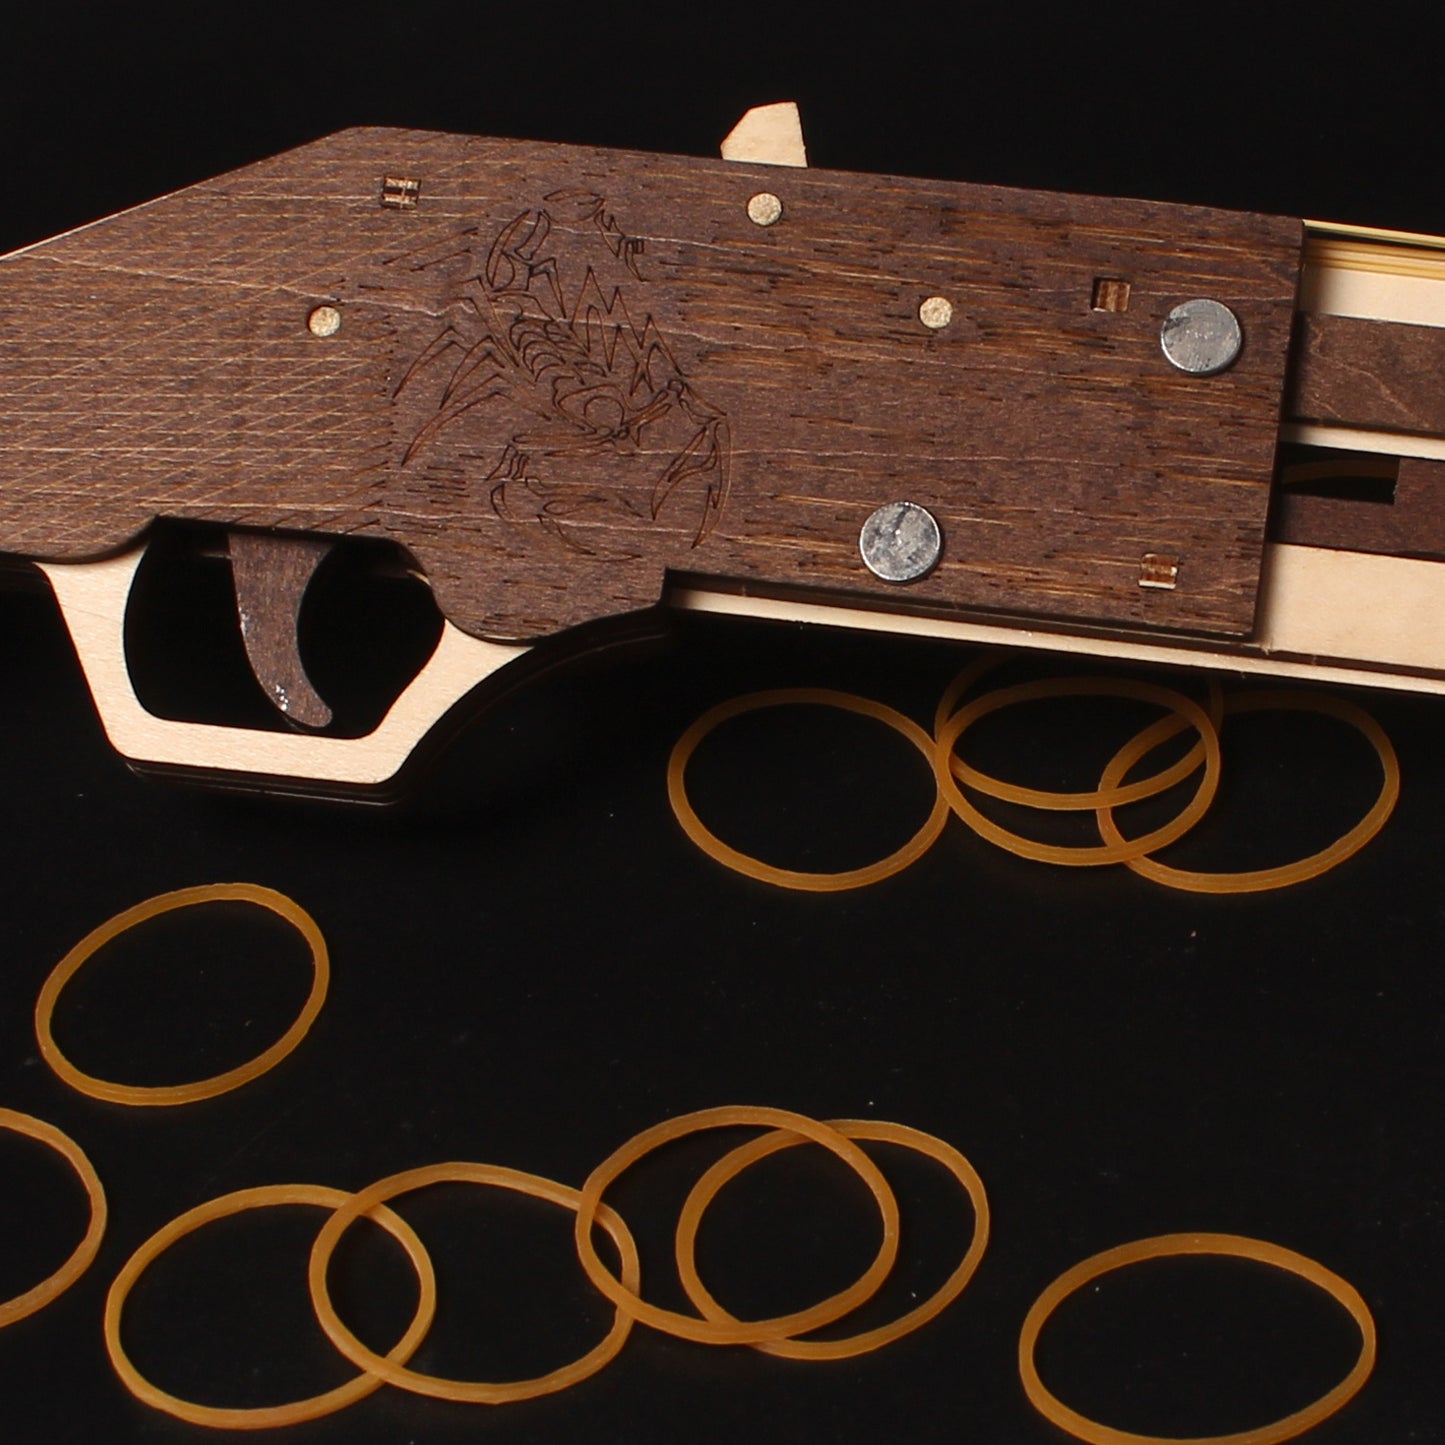 DIY 3D Mozambique Rubber Band Shotgun Wooden Puzzle Kit